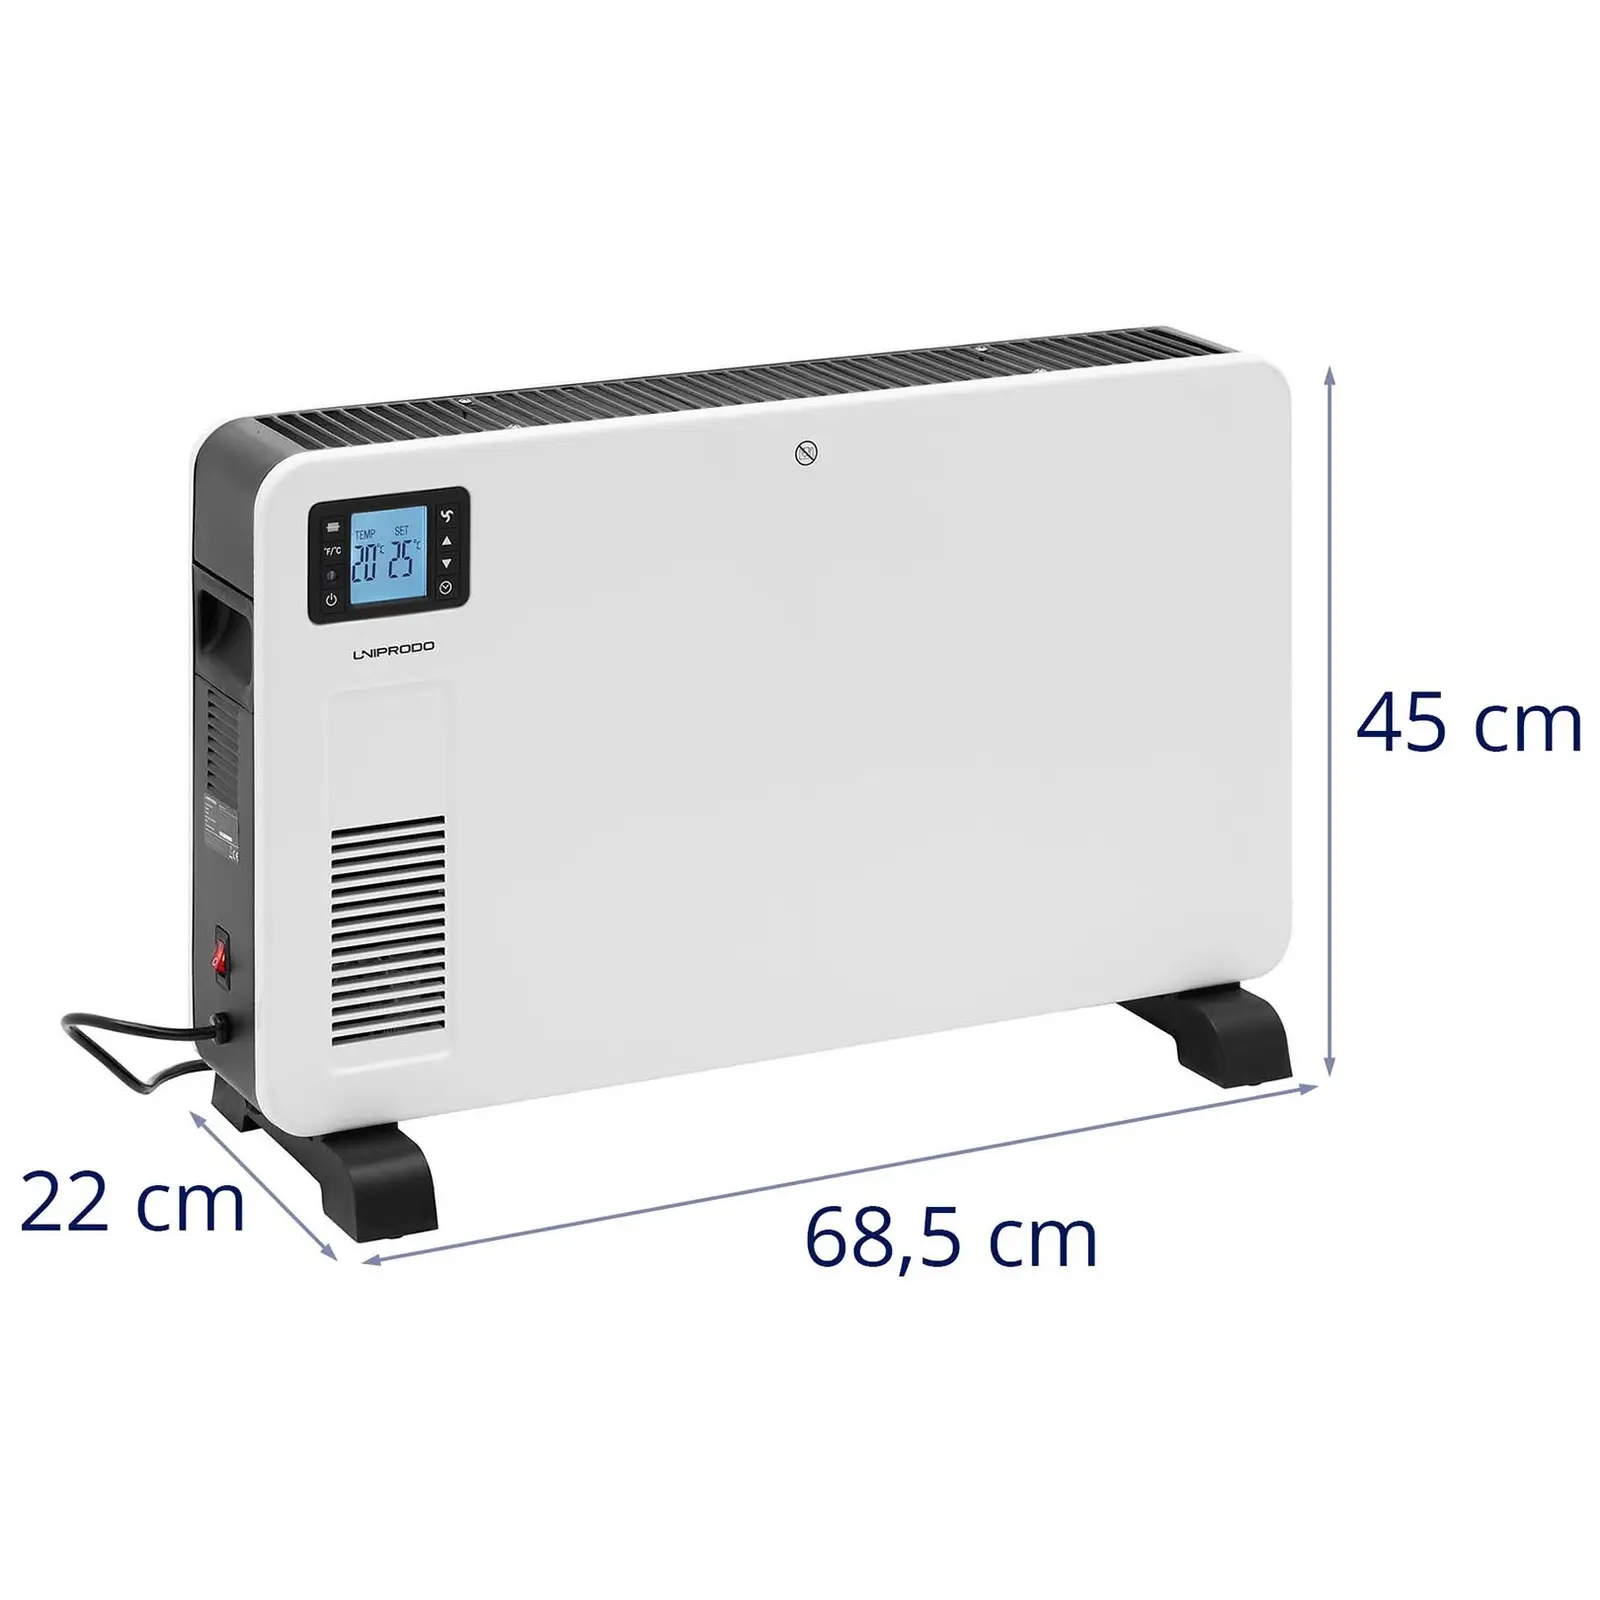 Termoconvettore elettrico - Per 25 m² - 2300 W - Timer - LCD